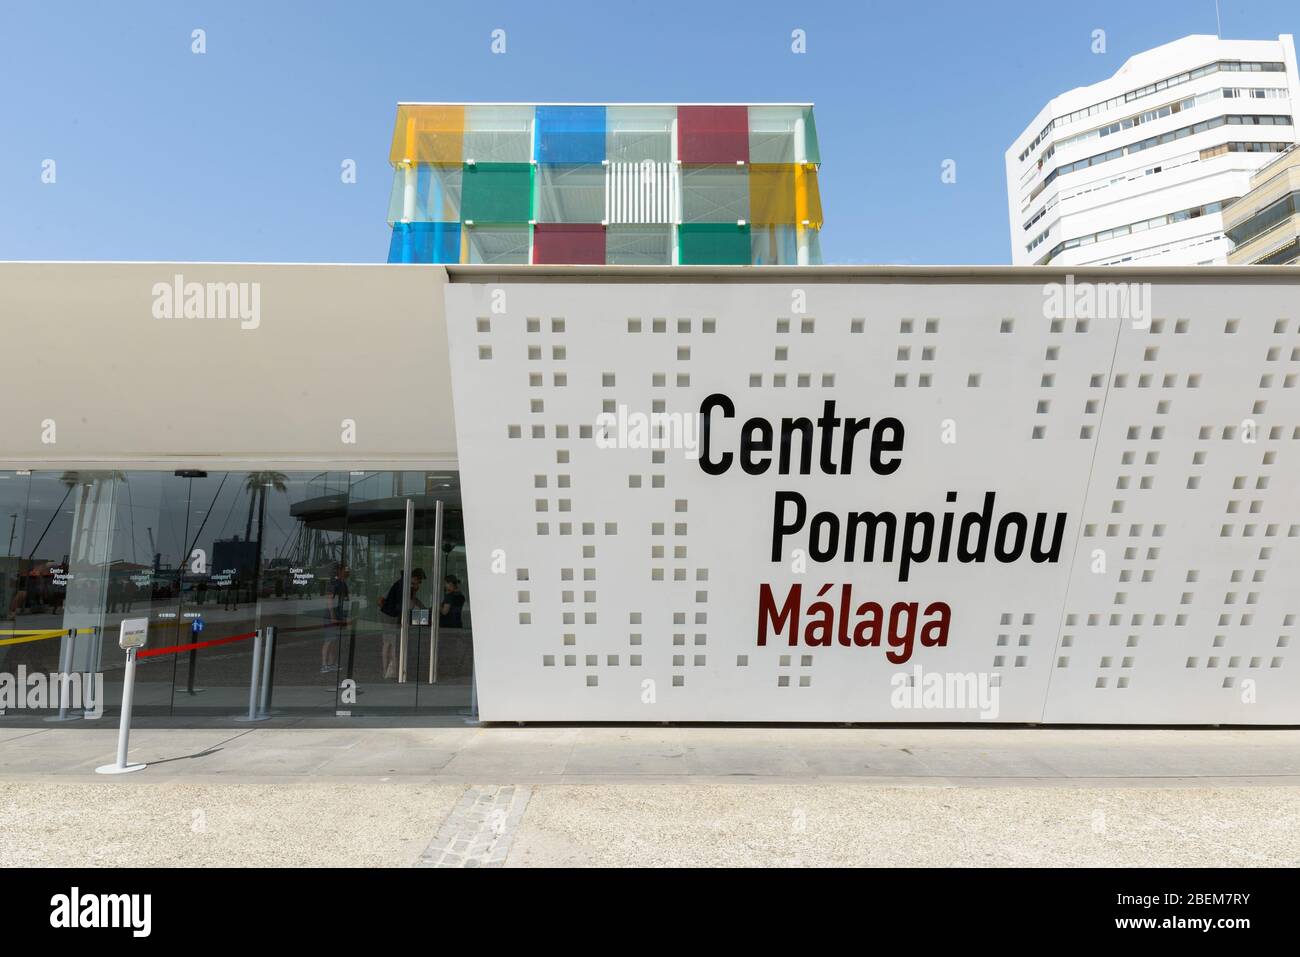 MALAGA, SPANIEN - 3. SEPTEMBER: Zentrum Pombidou in Malaga Spanien Stockfoto